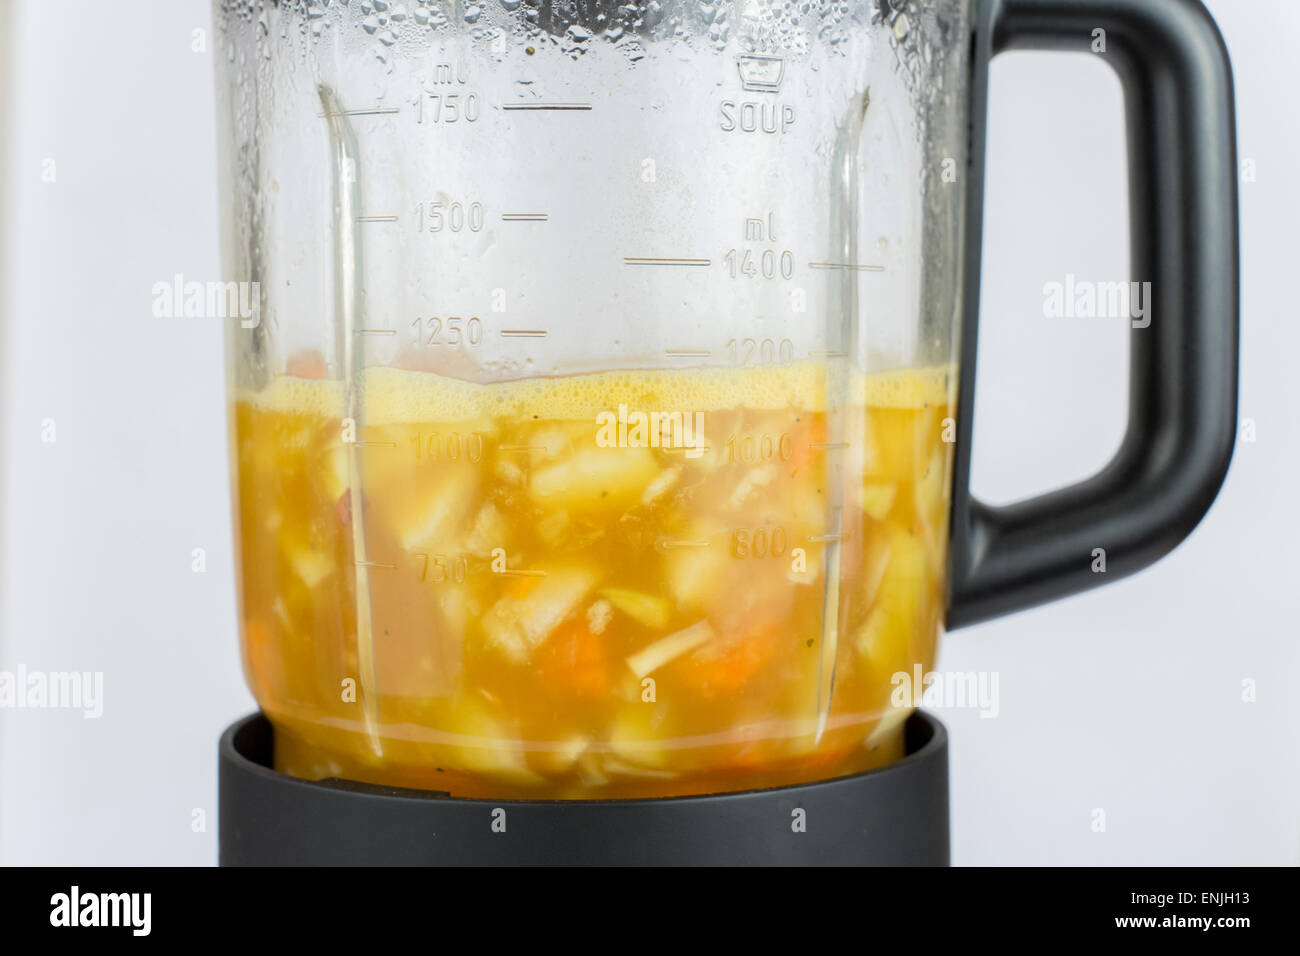 La carotte fait maison de la soupe dans une soupière, faisant appareil électrique une soupe. Banque D'Images